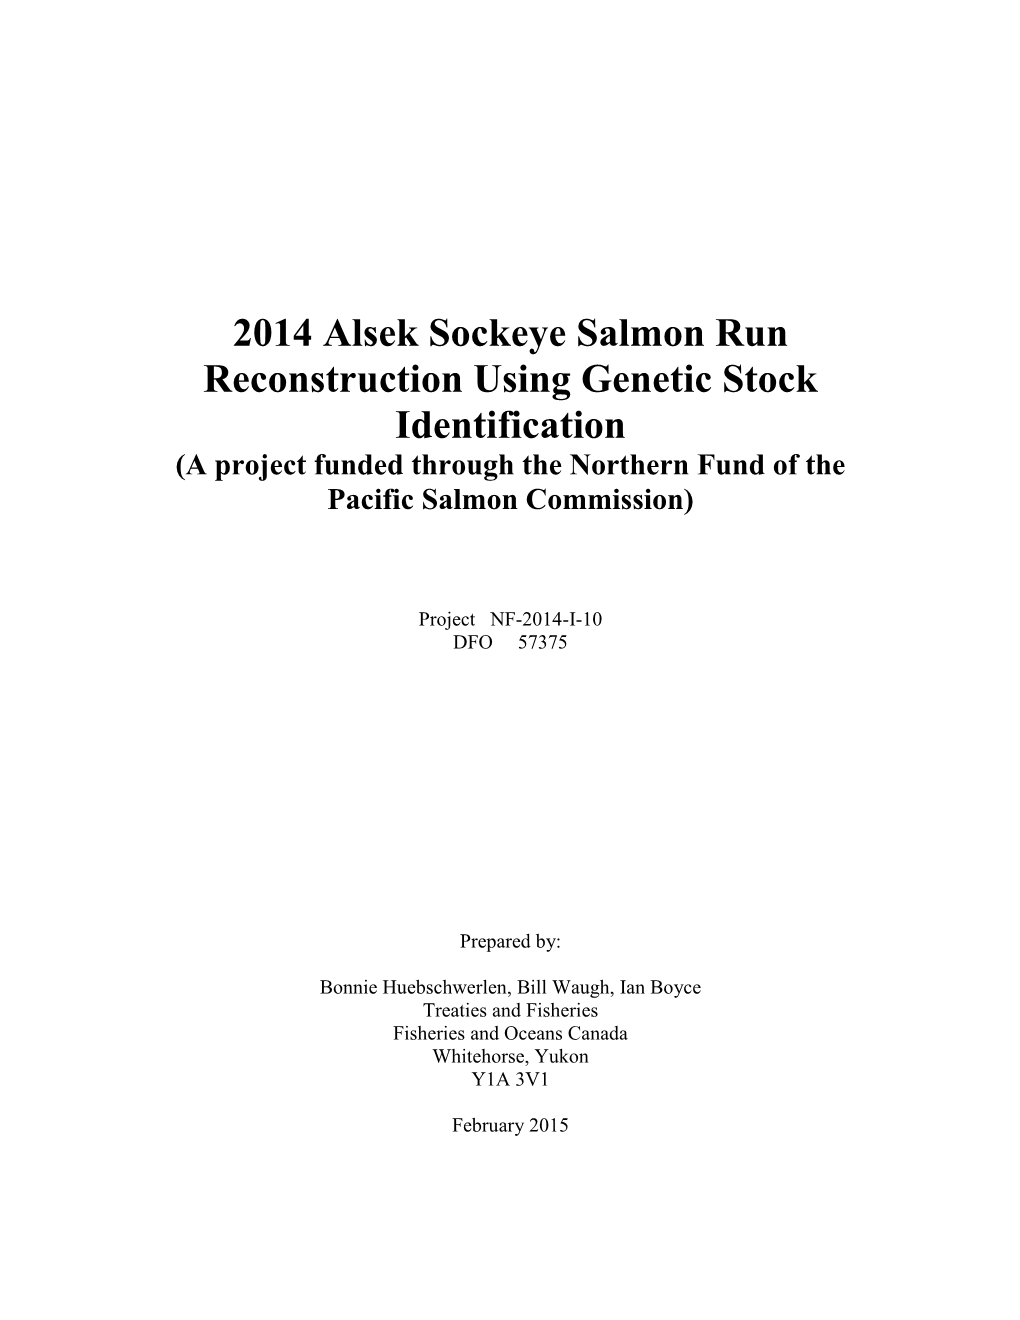 Population Estimate for Alsek River Sockeye Salmon 2005